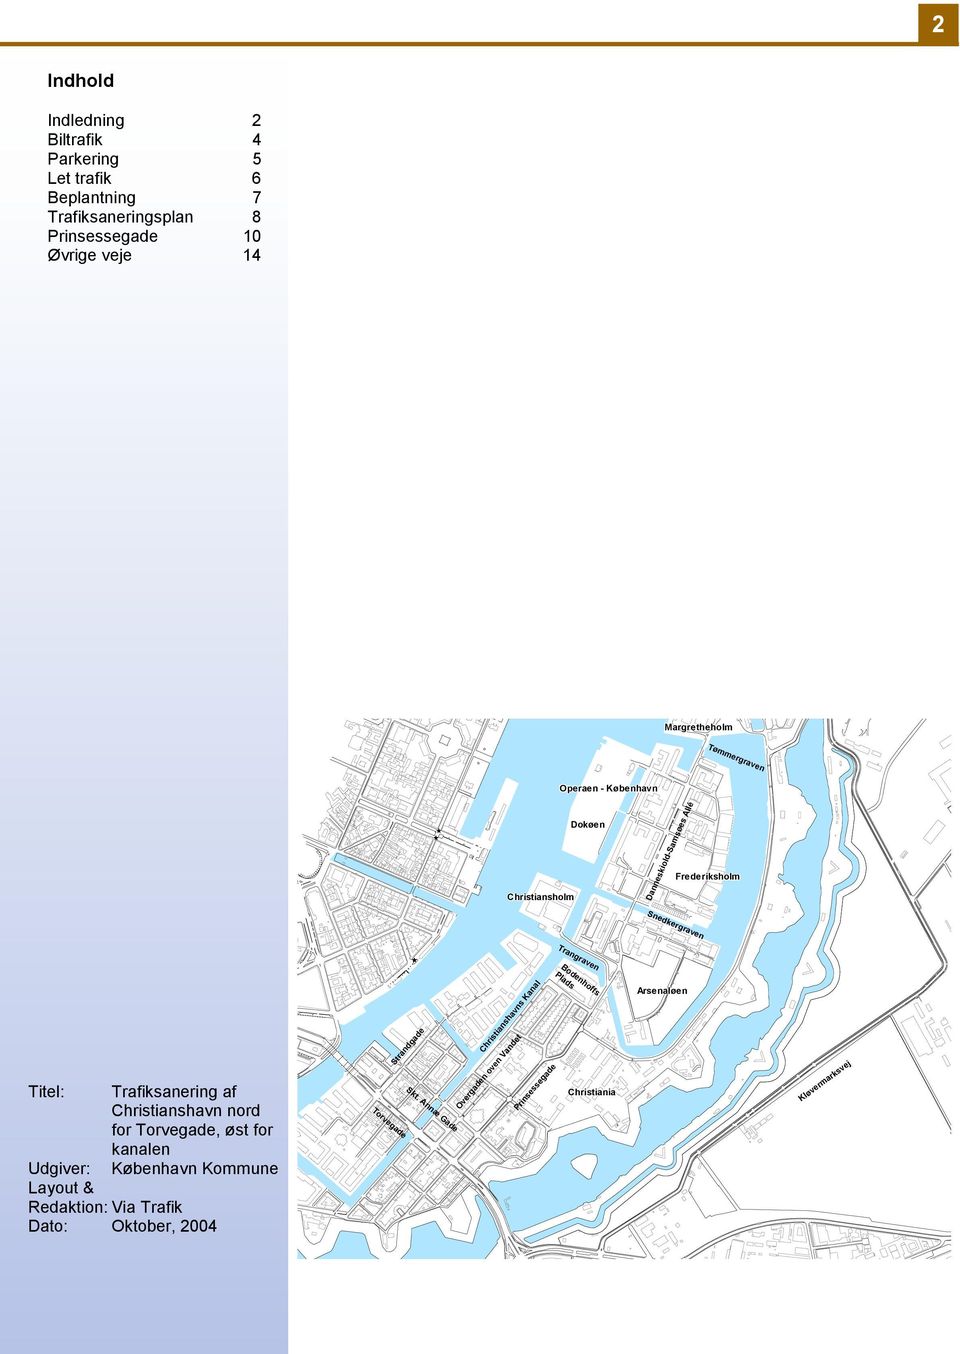 Trafiksanering af Christianshavn nord for Torvegade, øst for kanalen Udgiver: København Kommune Layout & Redaktion: Via Trafik Dato: